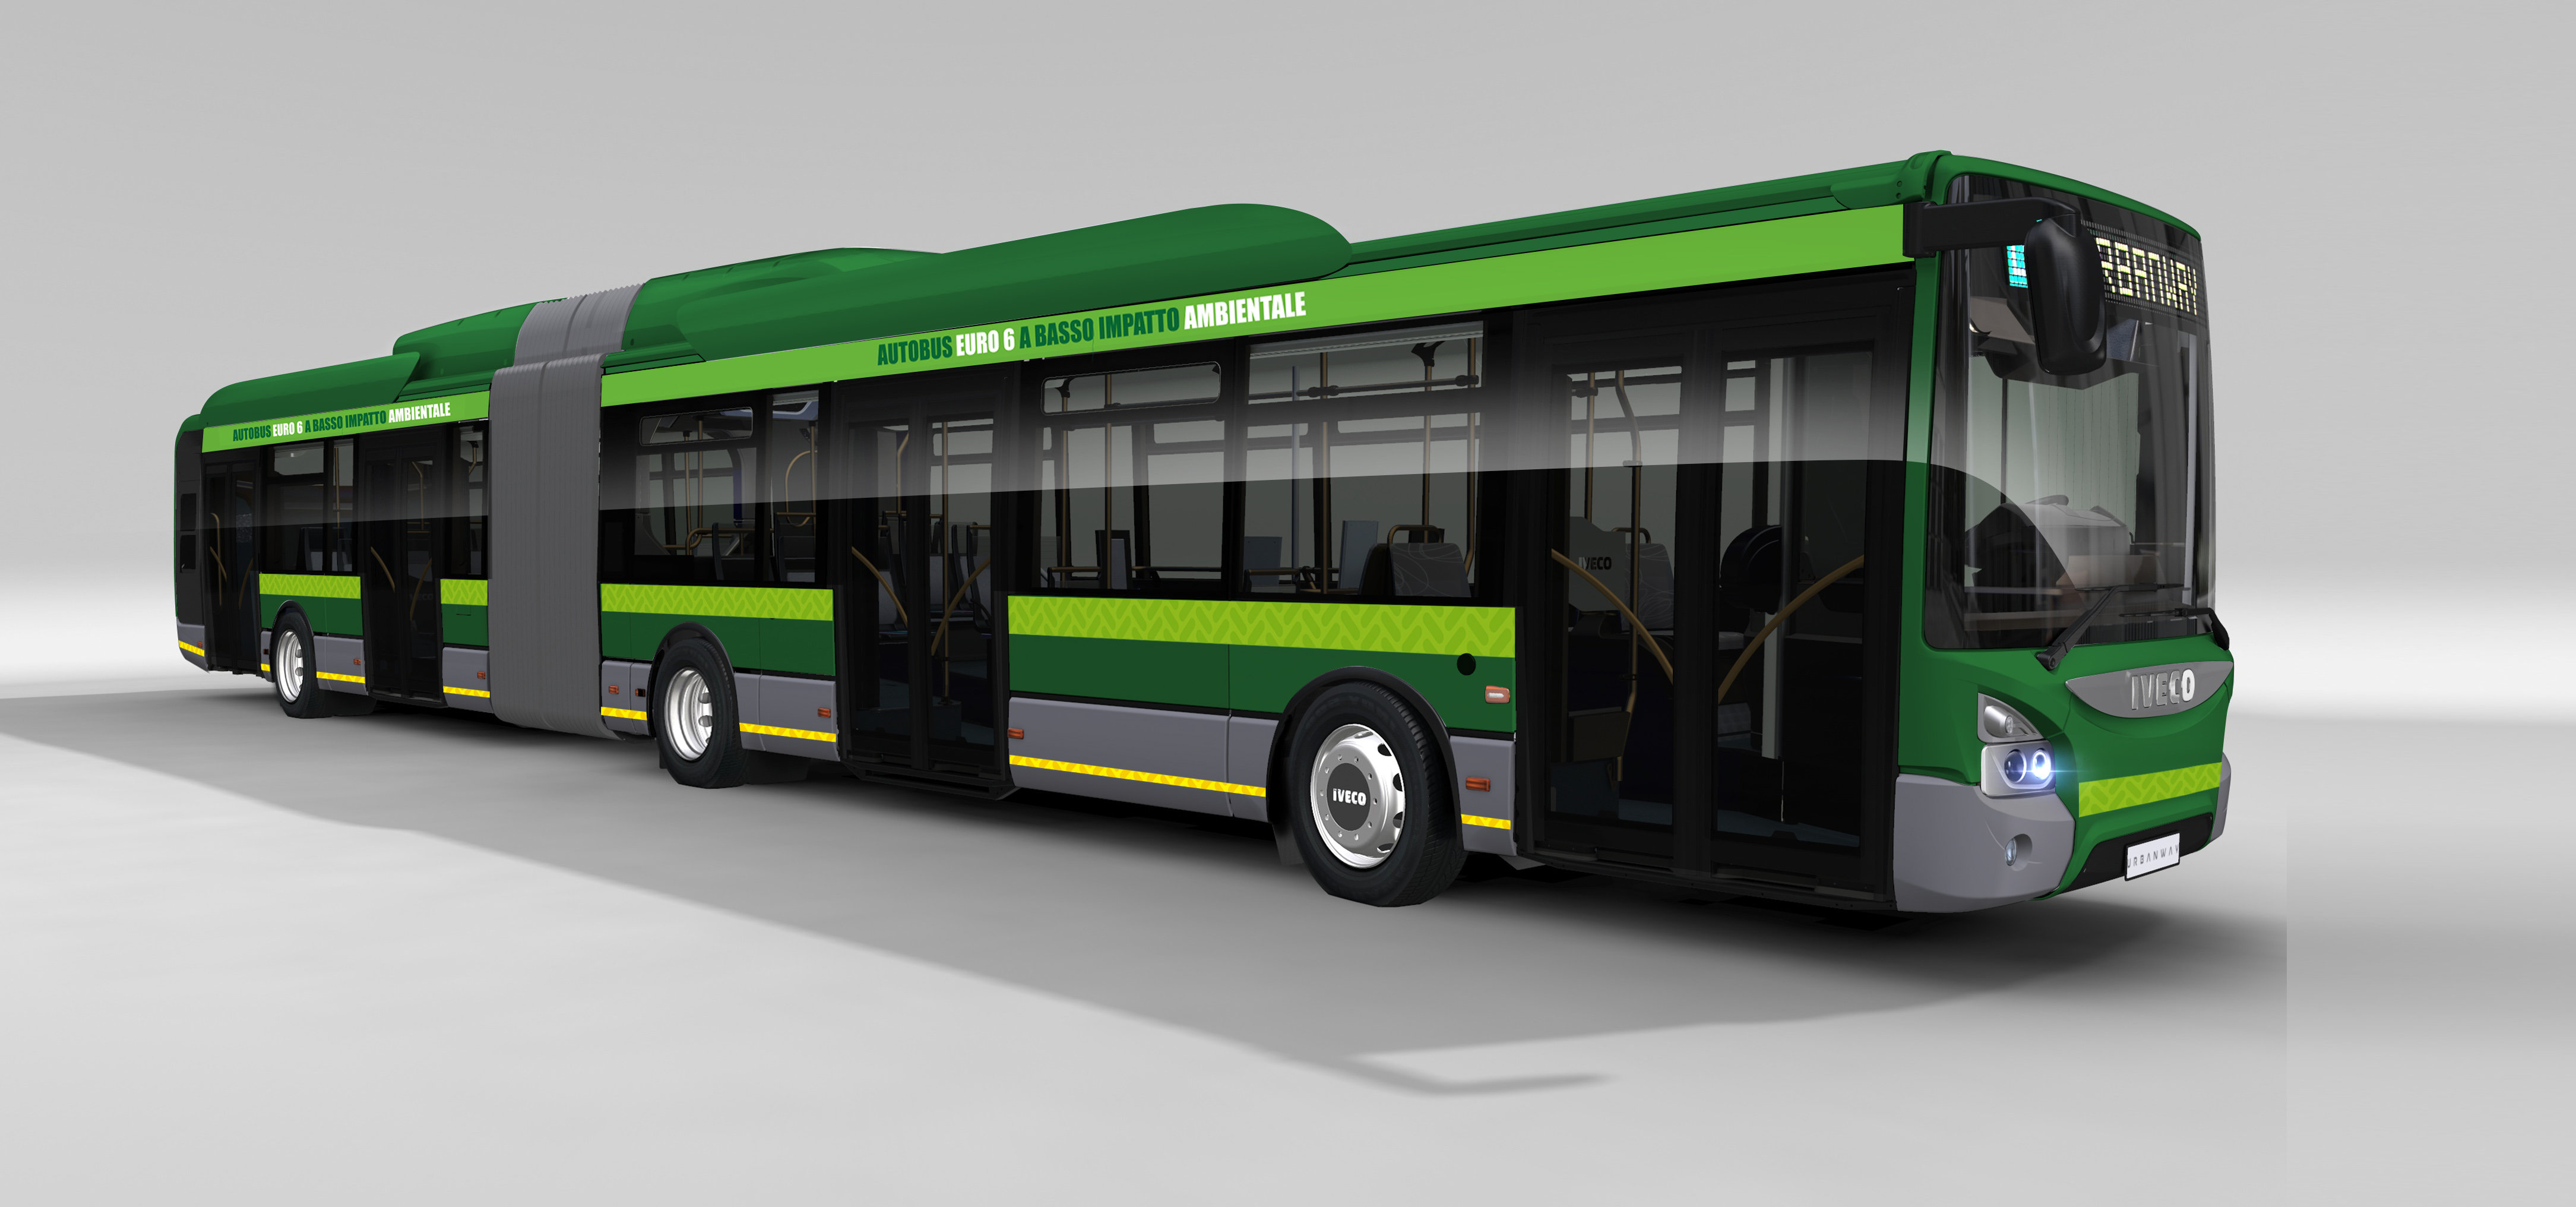 IVECO entregará transporte sustentable a la ciudad de Milán